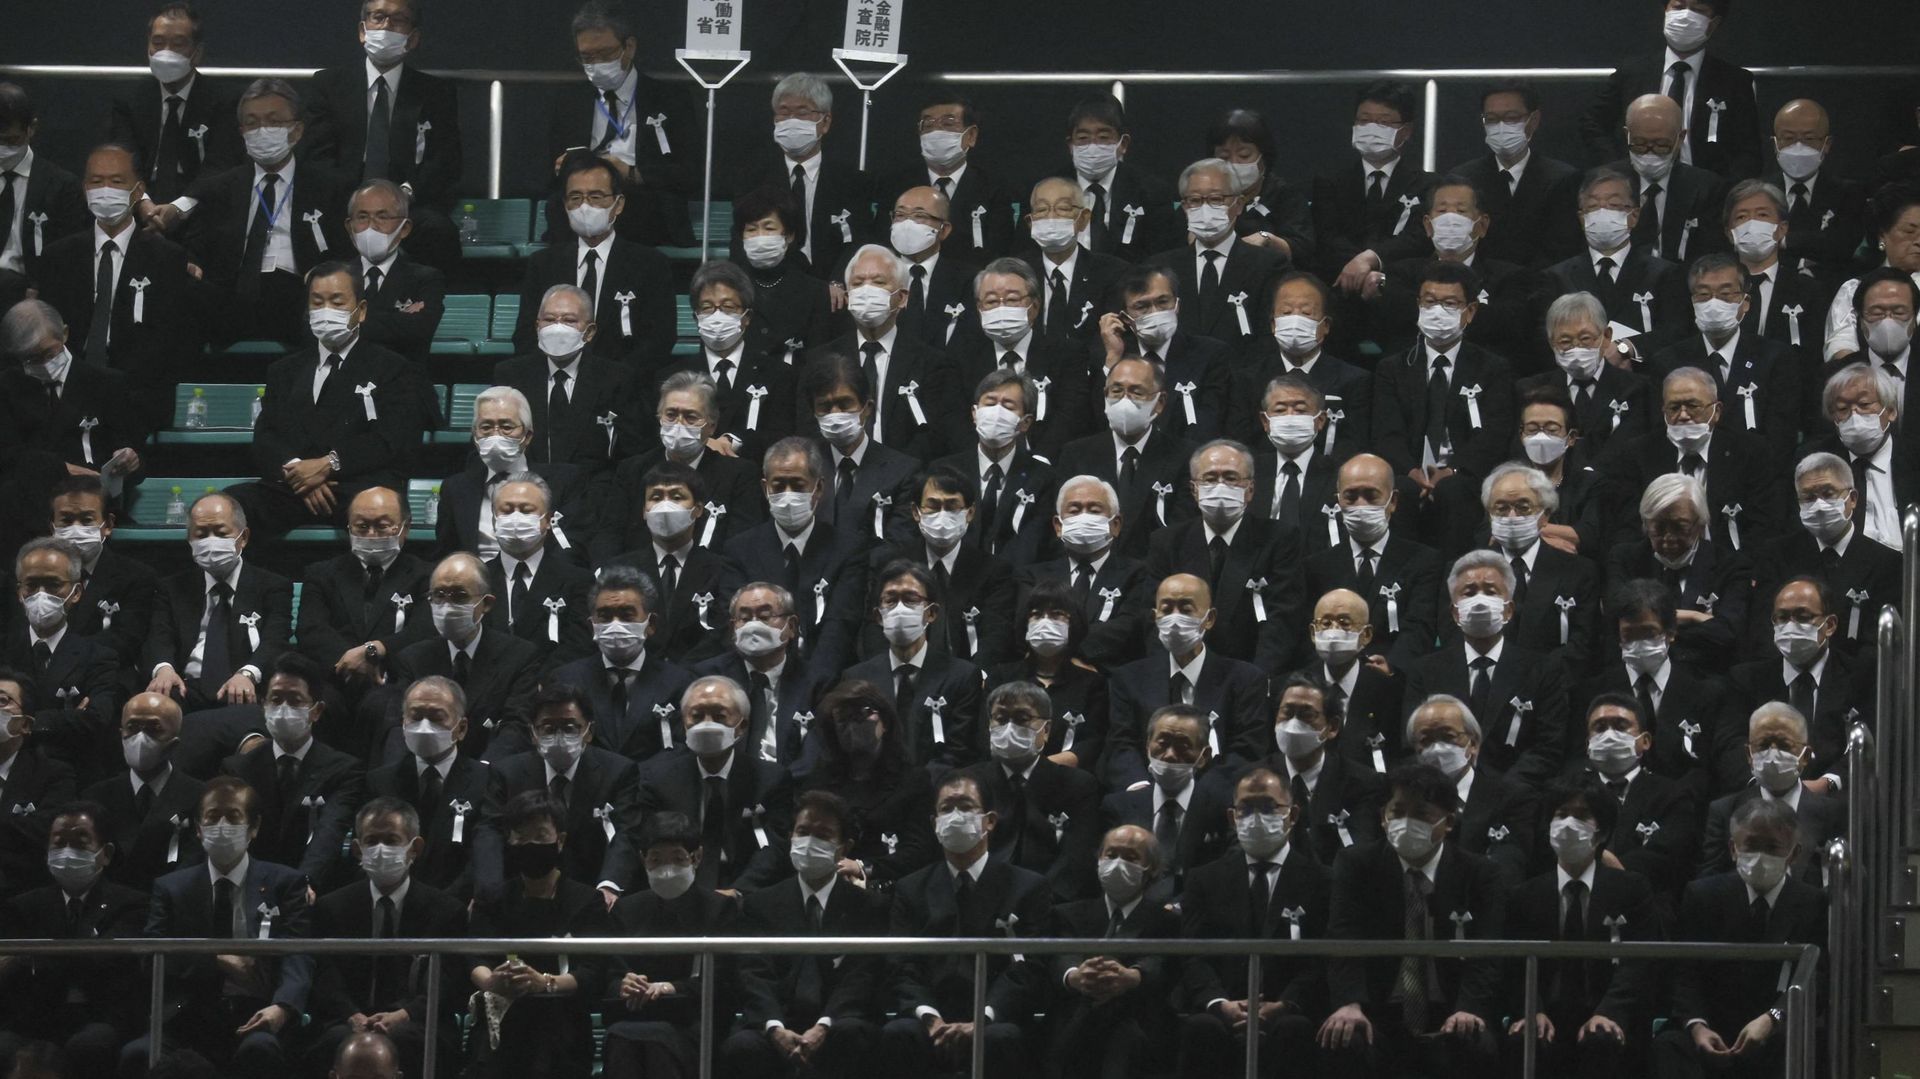 Des invités assistent aux funérailles nationales de l'ancien premier ministre japonais Shinzo Abe au Nippon Budokan à Tokyo, le 27 septembre 2022.